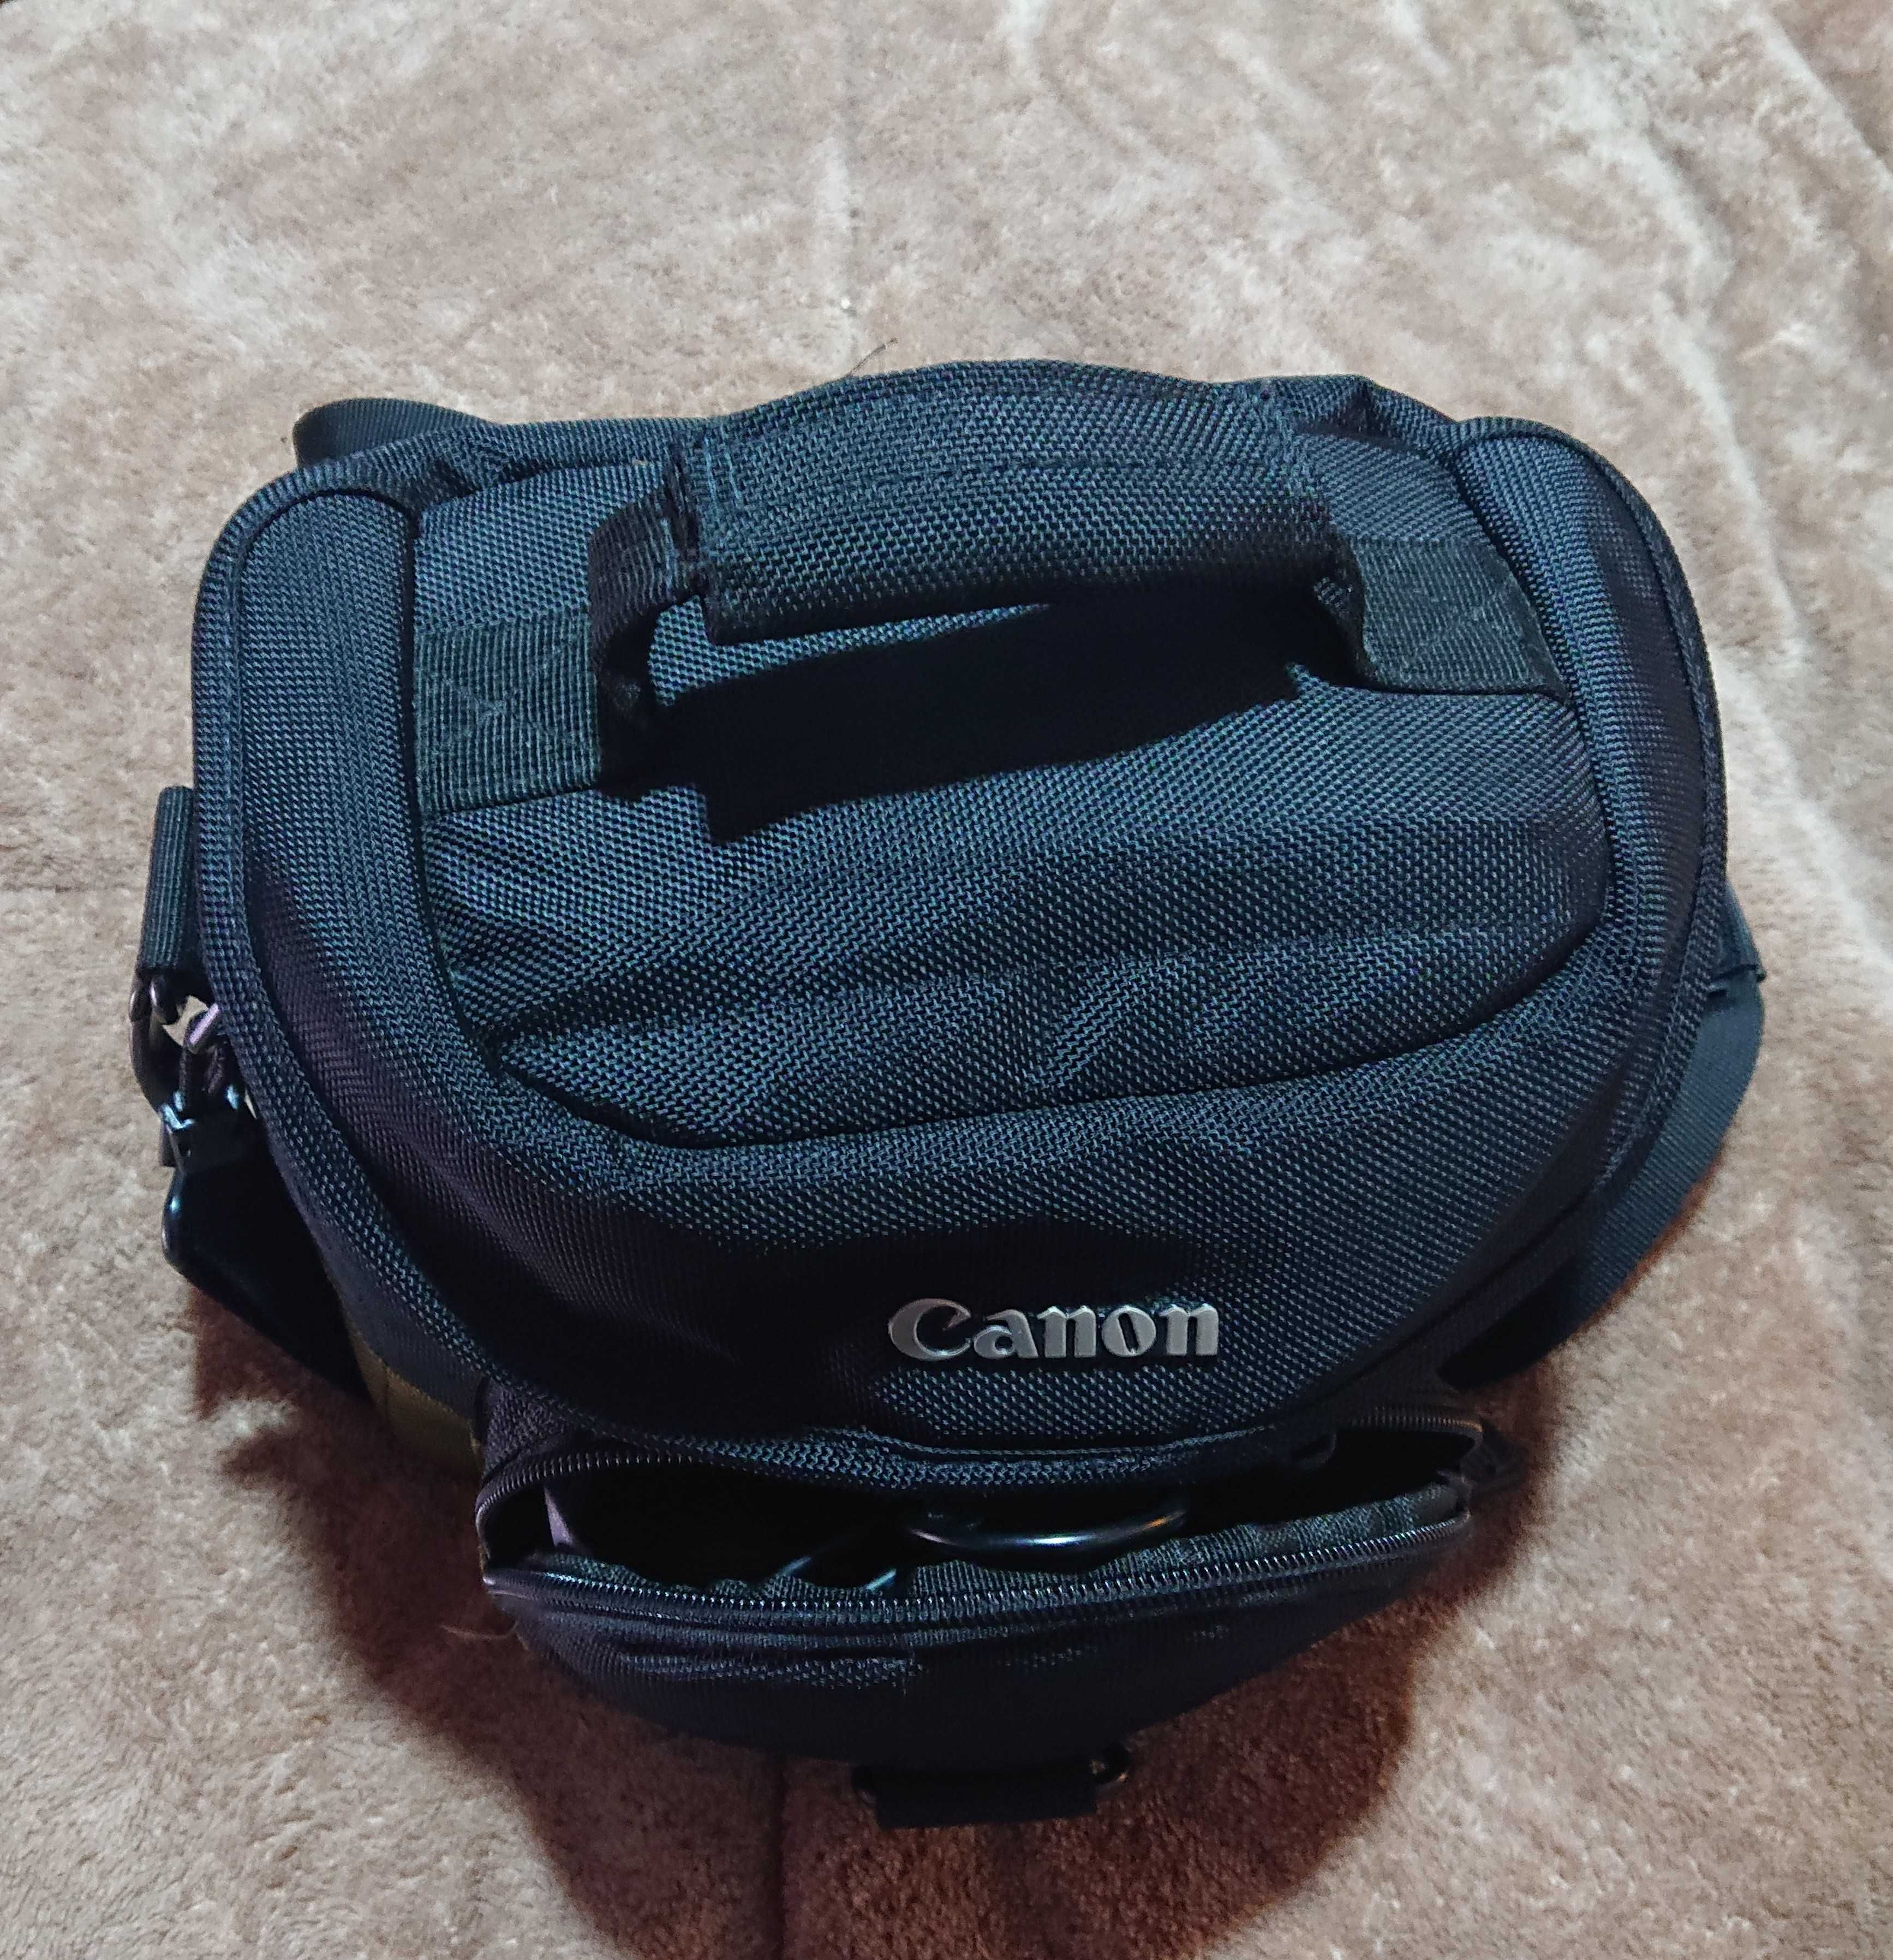 Maquina fotografica digital CANON EOS 1100D com duas lentes